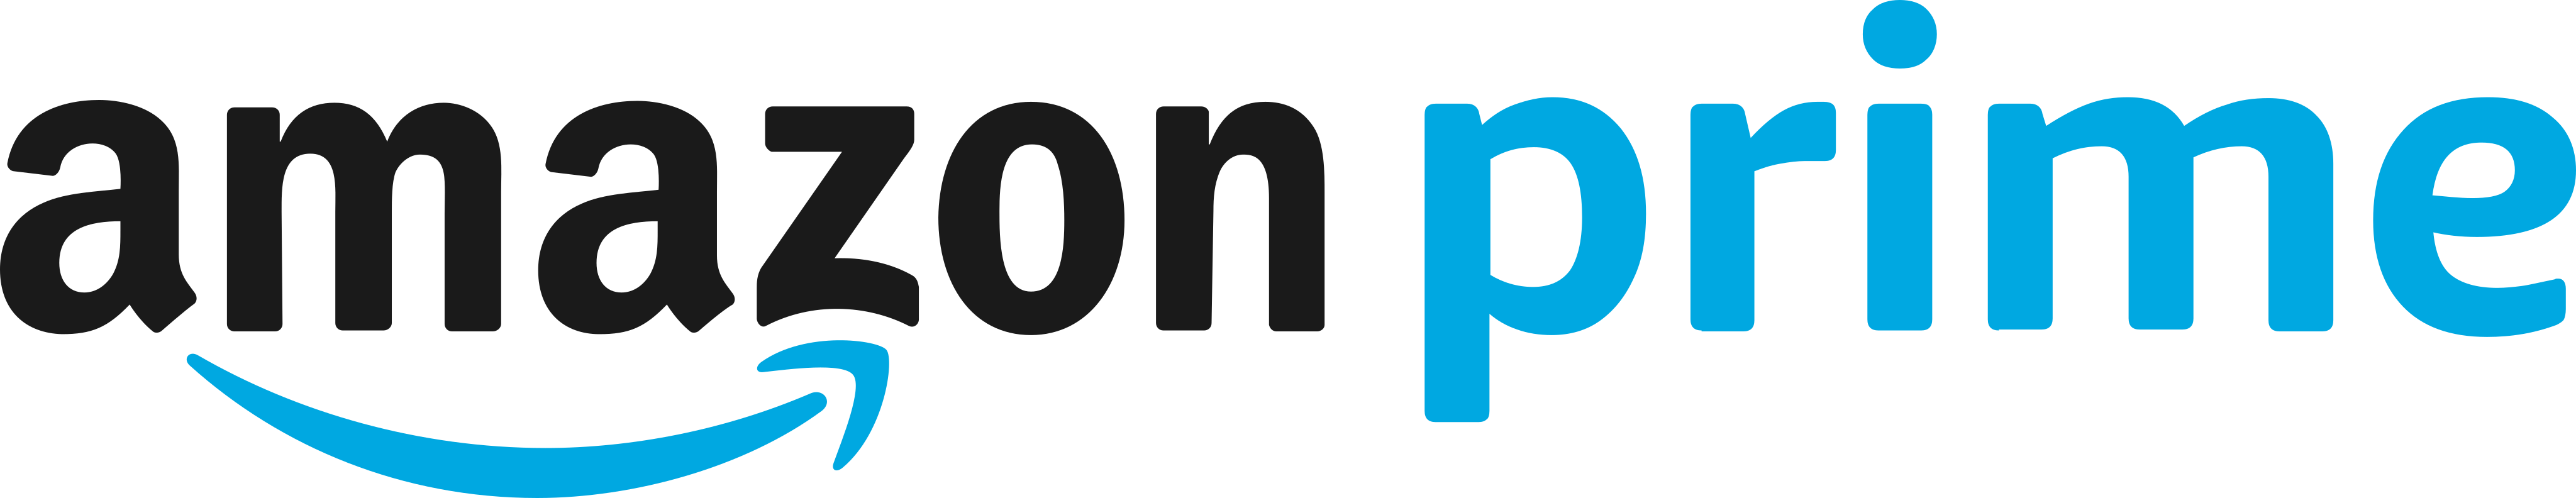 amazon prime logo - Amazon Prime Logo